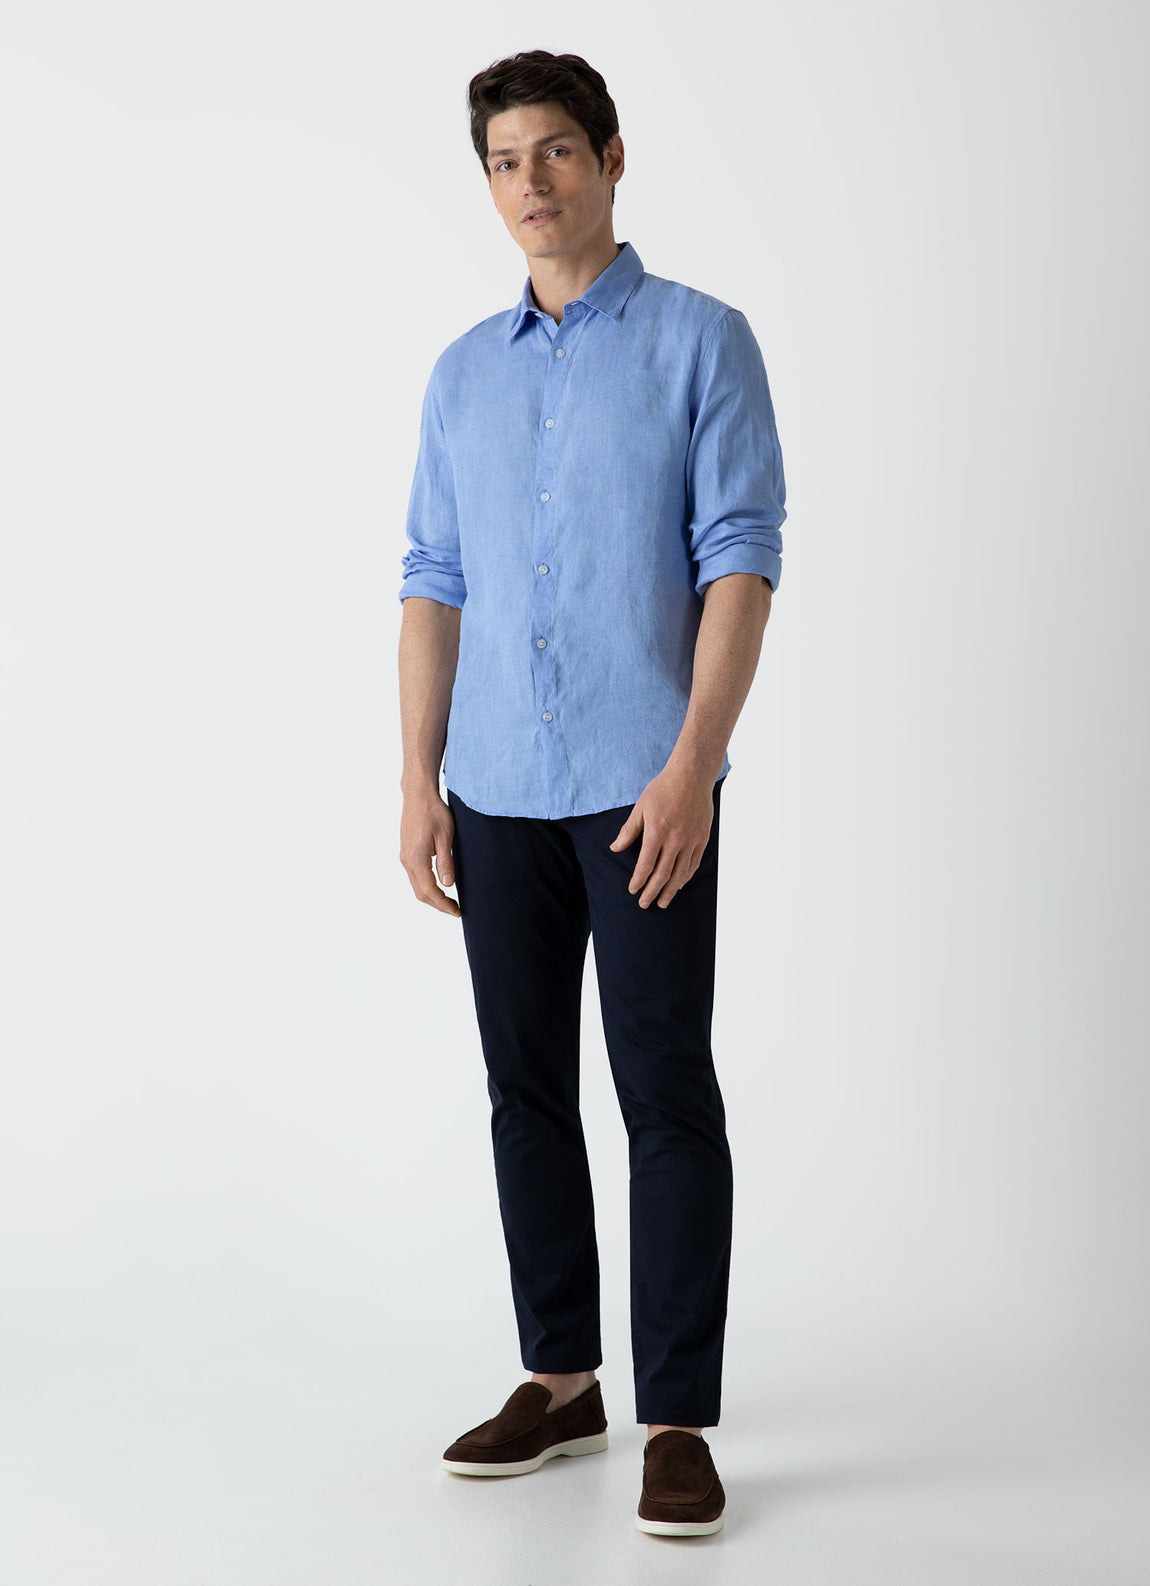 Men's Linen Shirt in Cool Blue | Sunspel